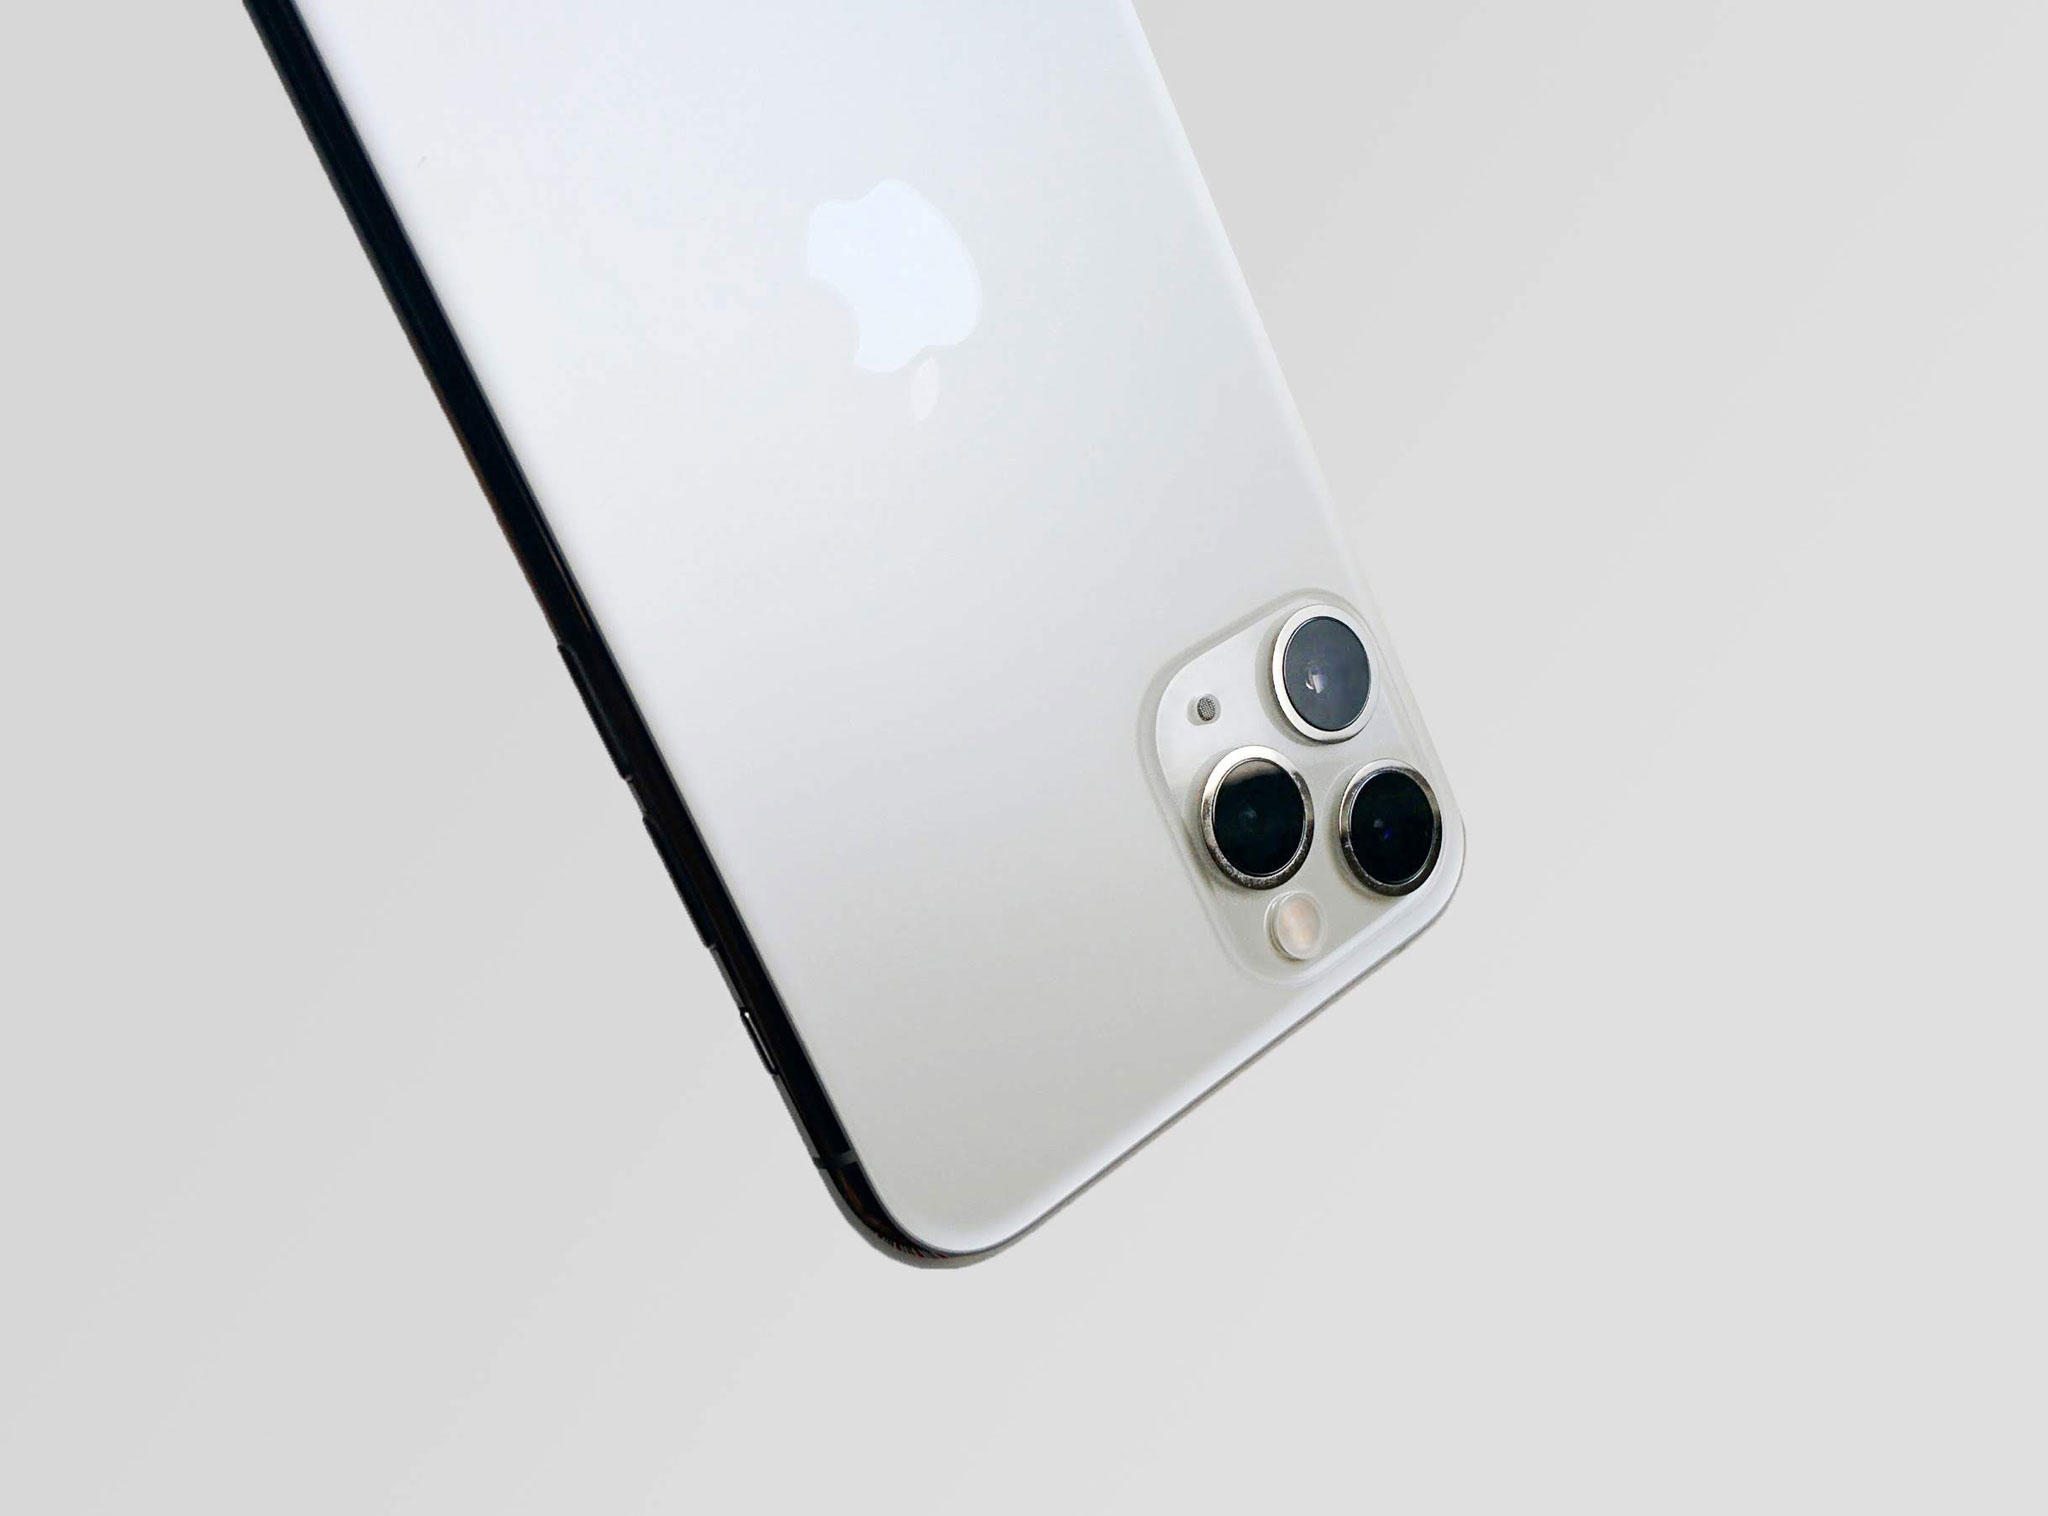 Vì sao Apple không có phép người dùng tự sửa chữa, tháo iPhone và phạt phí nếu phát hiện?